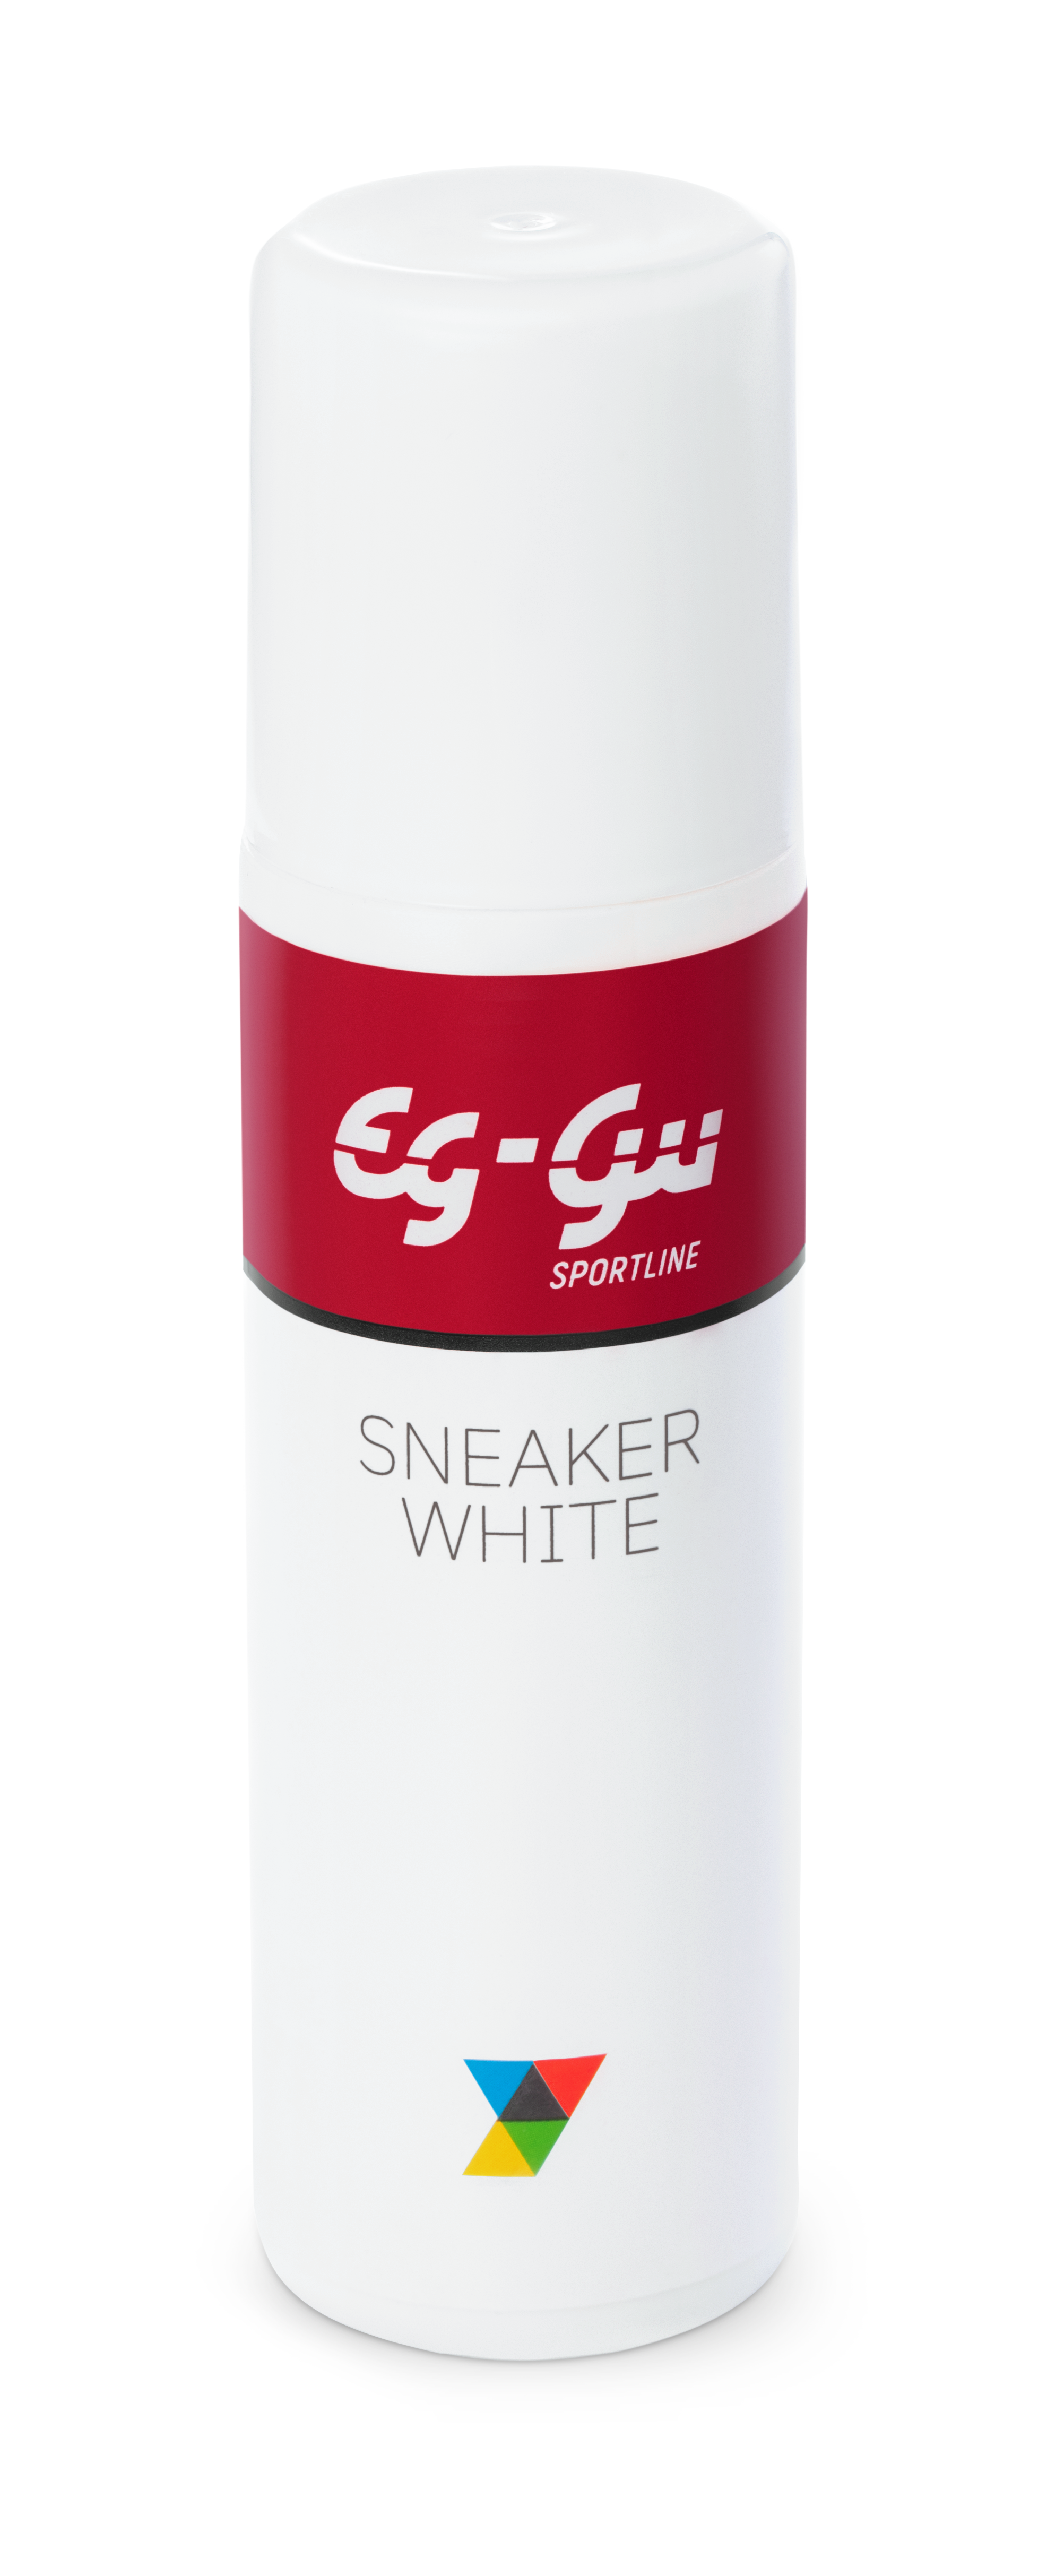 Shoe spray bottle